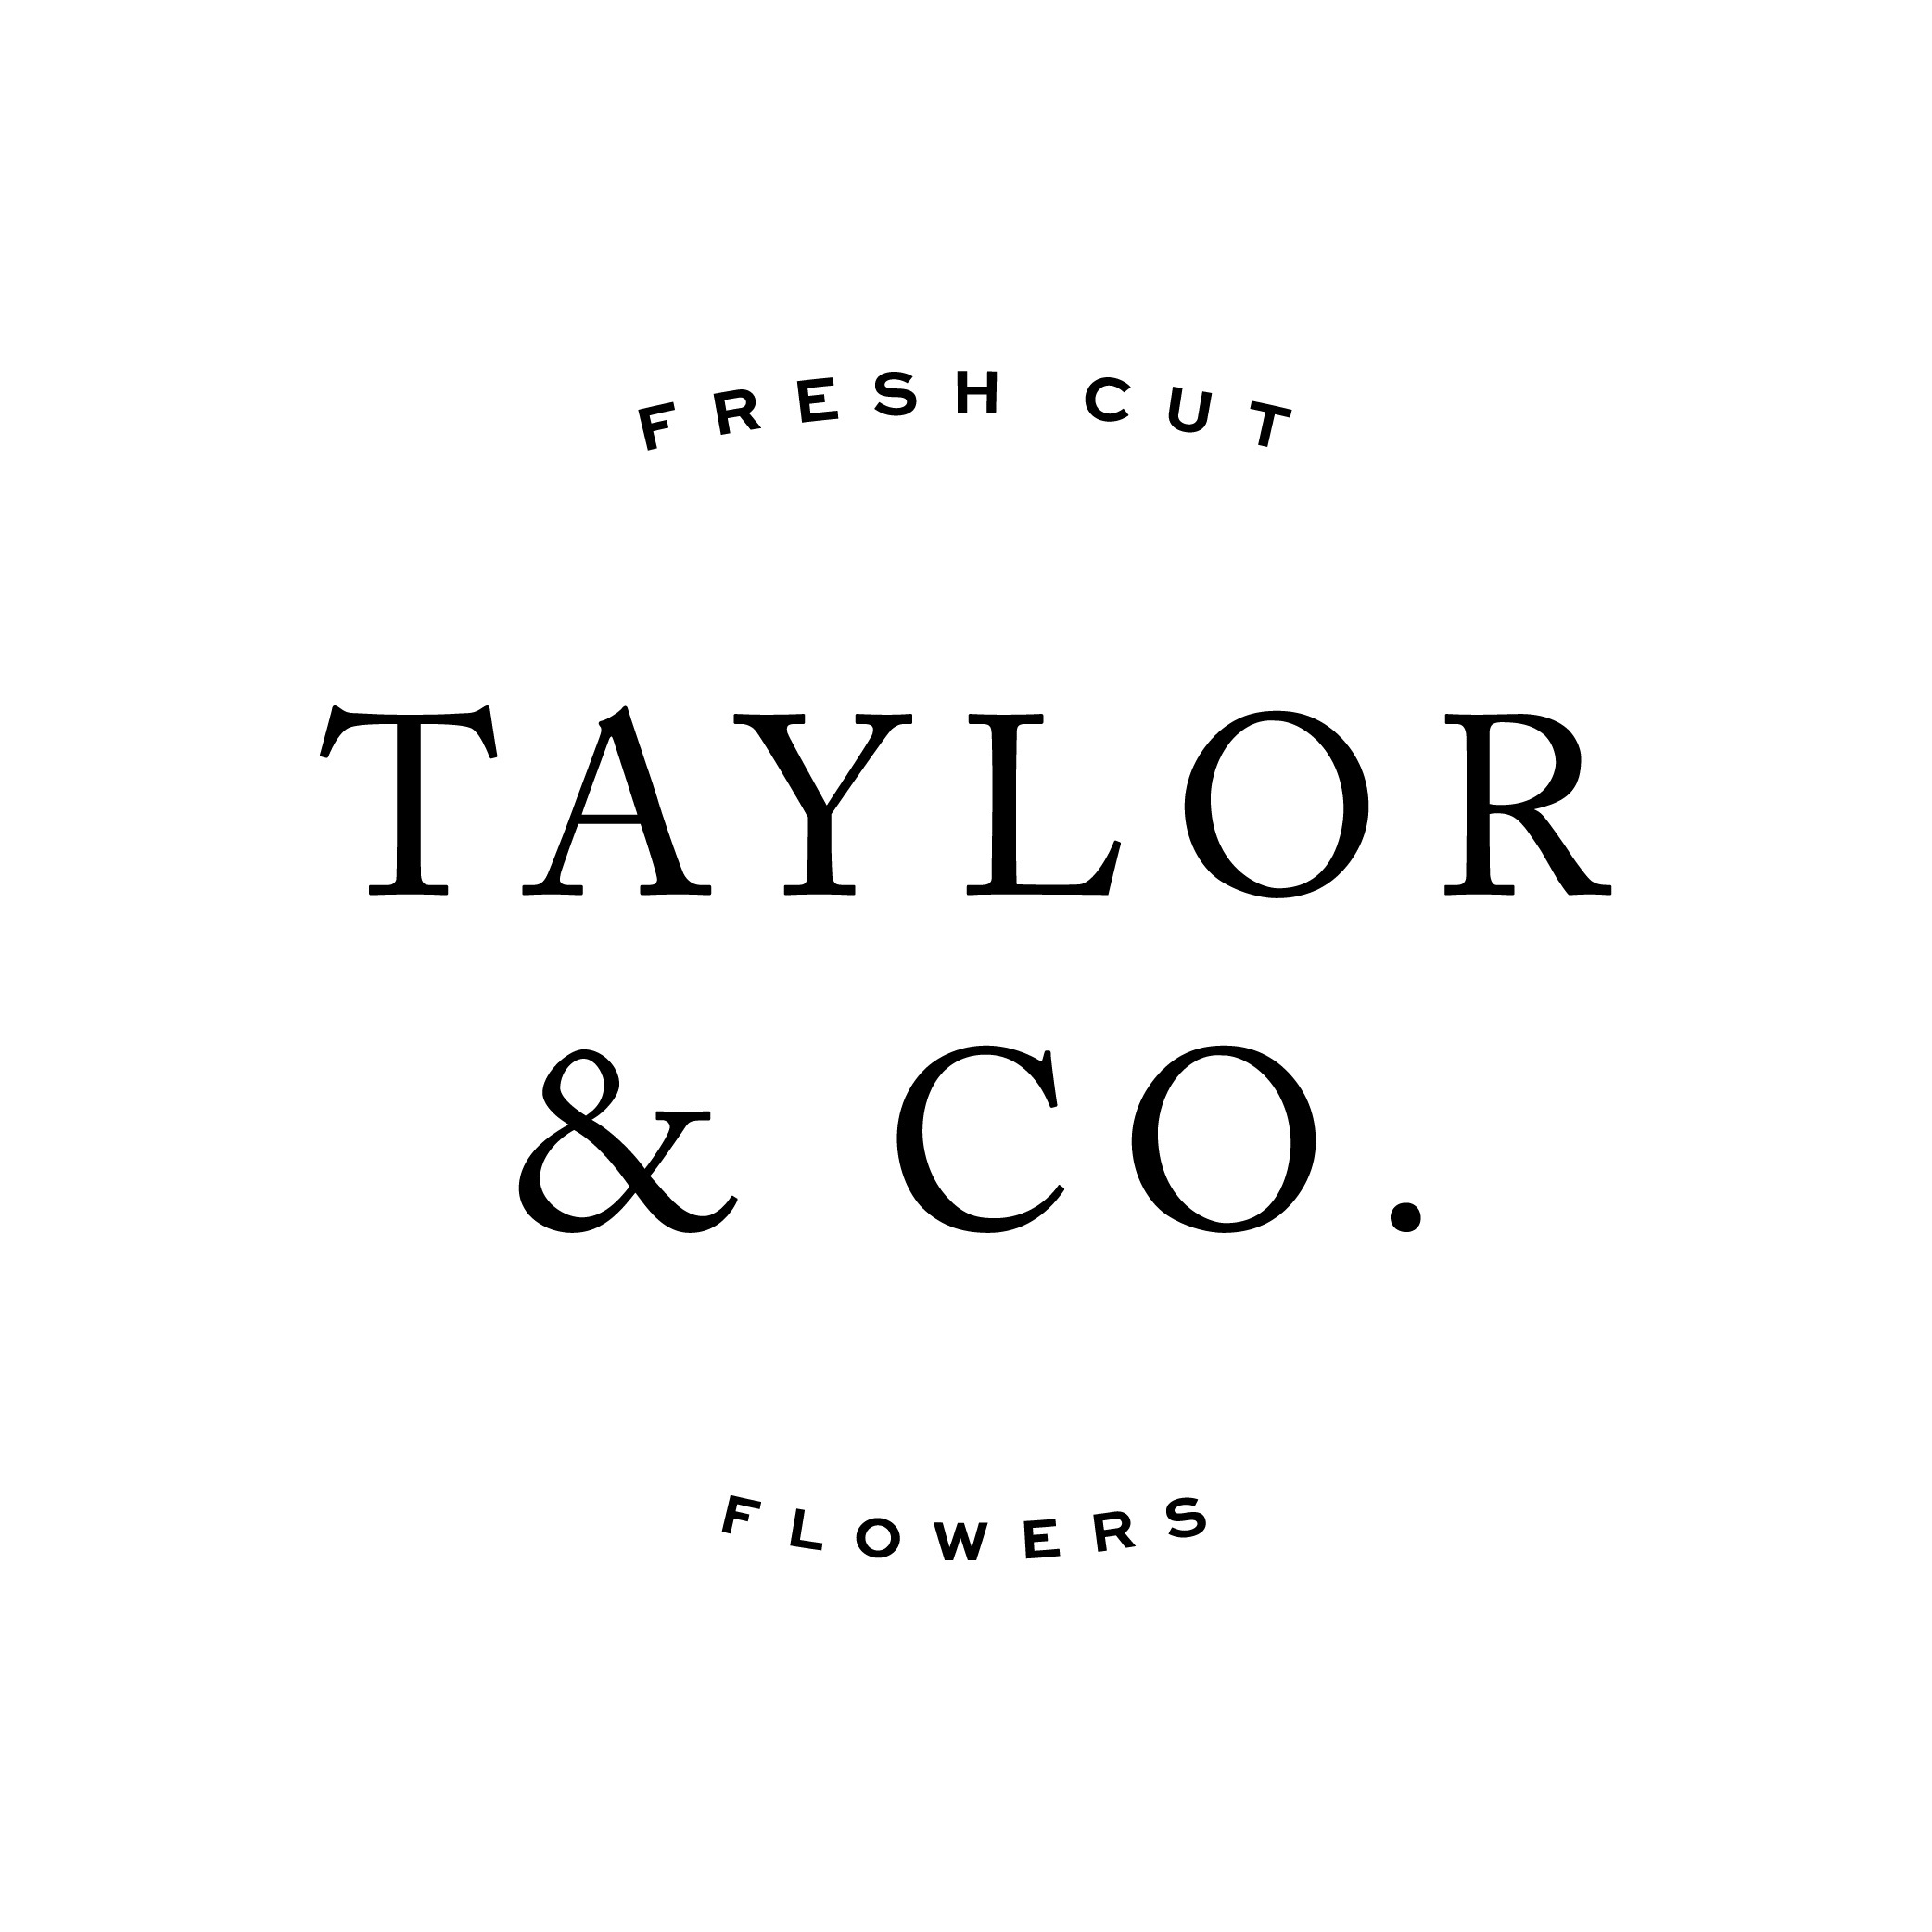 Taylor & Co. Fresh Cut Flowers, LLC